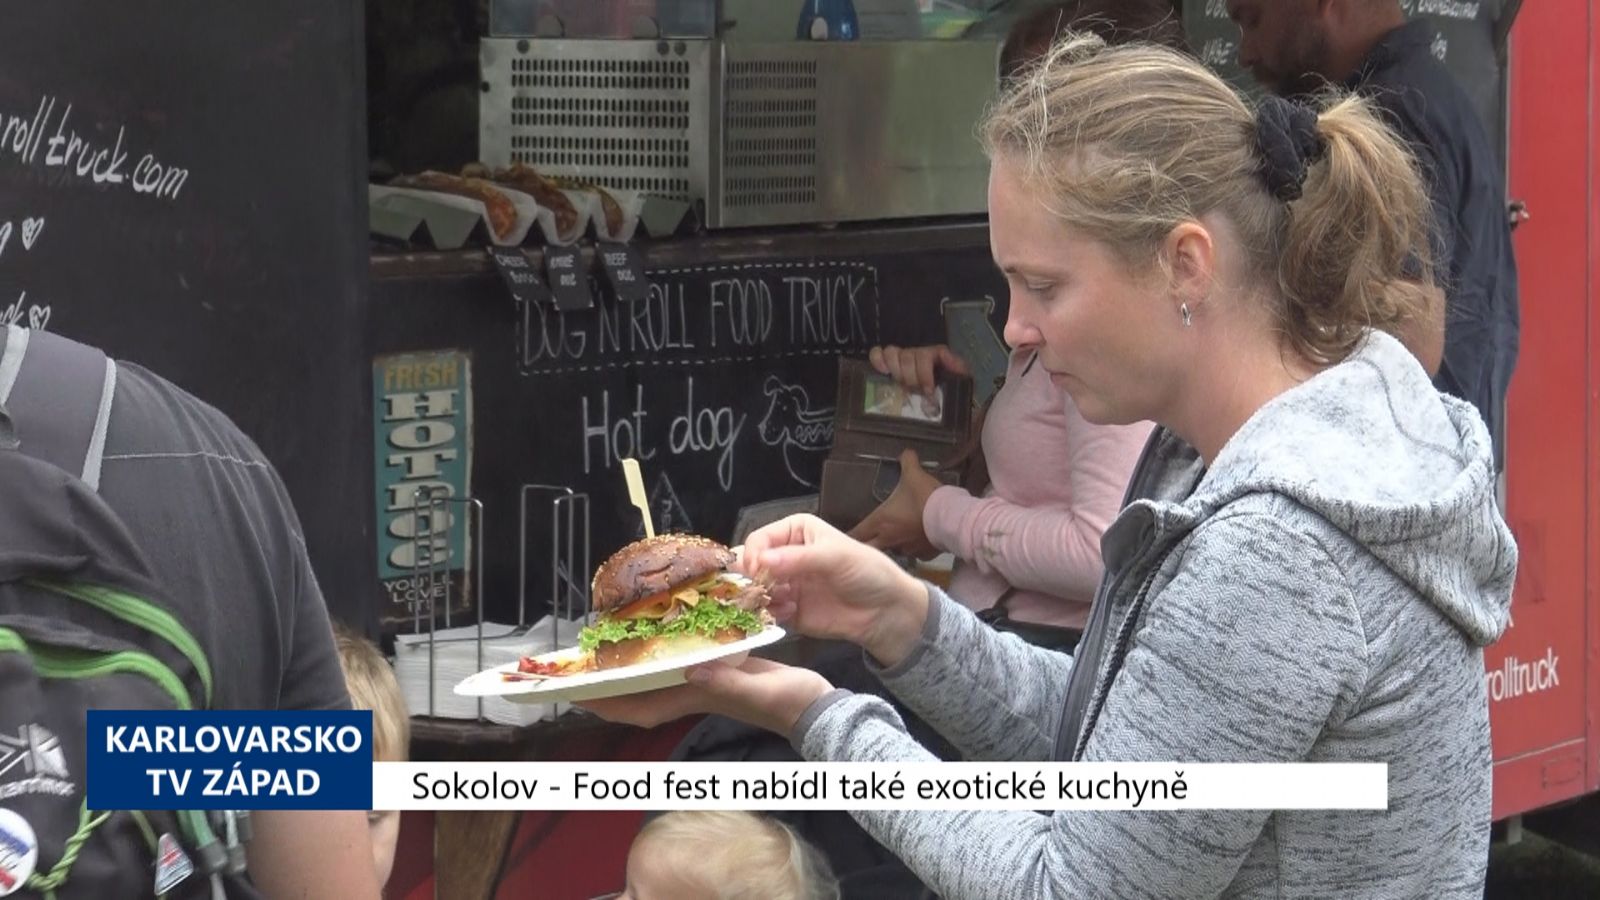 Sokolov: Food fest nabídl také exotické kuchyně (TV Západ)